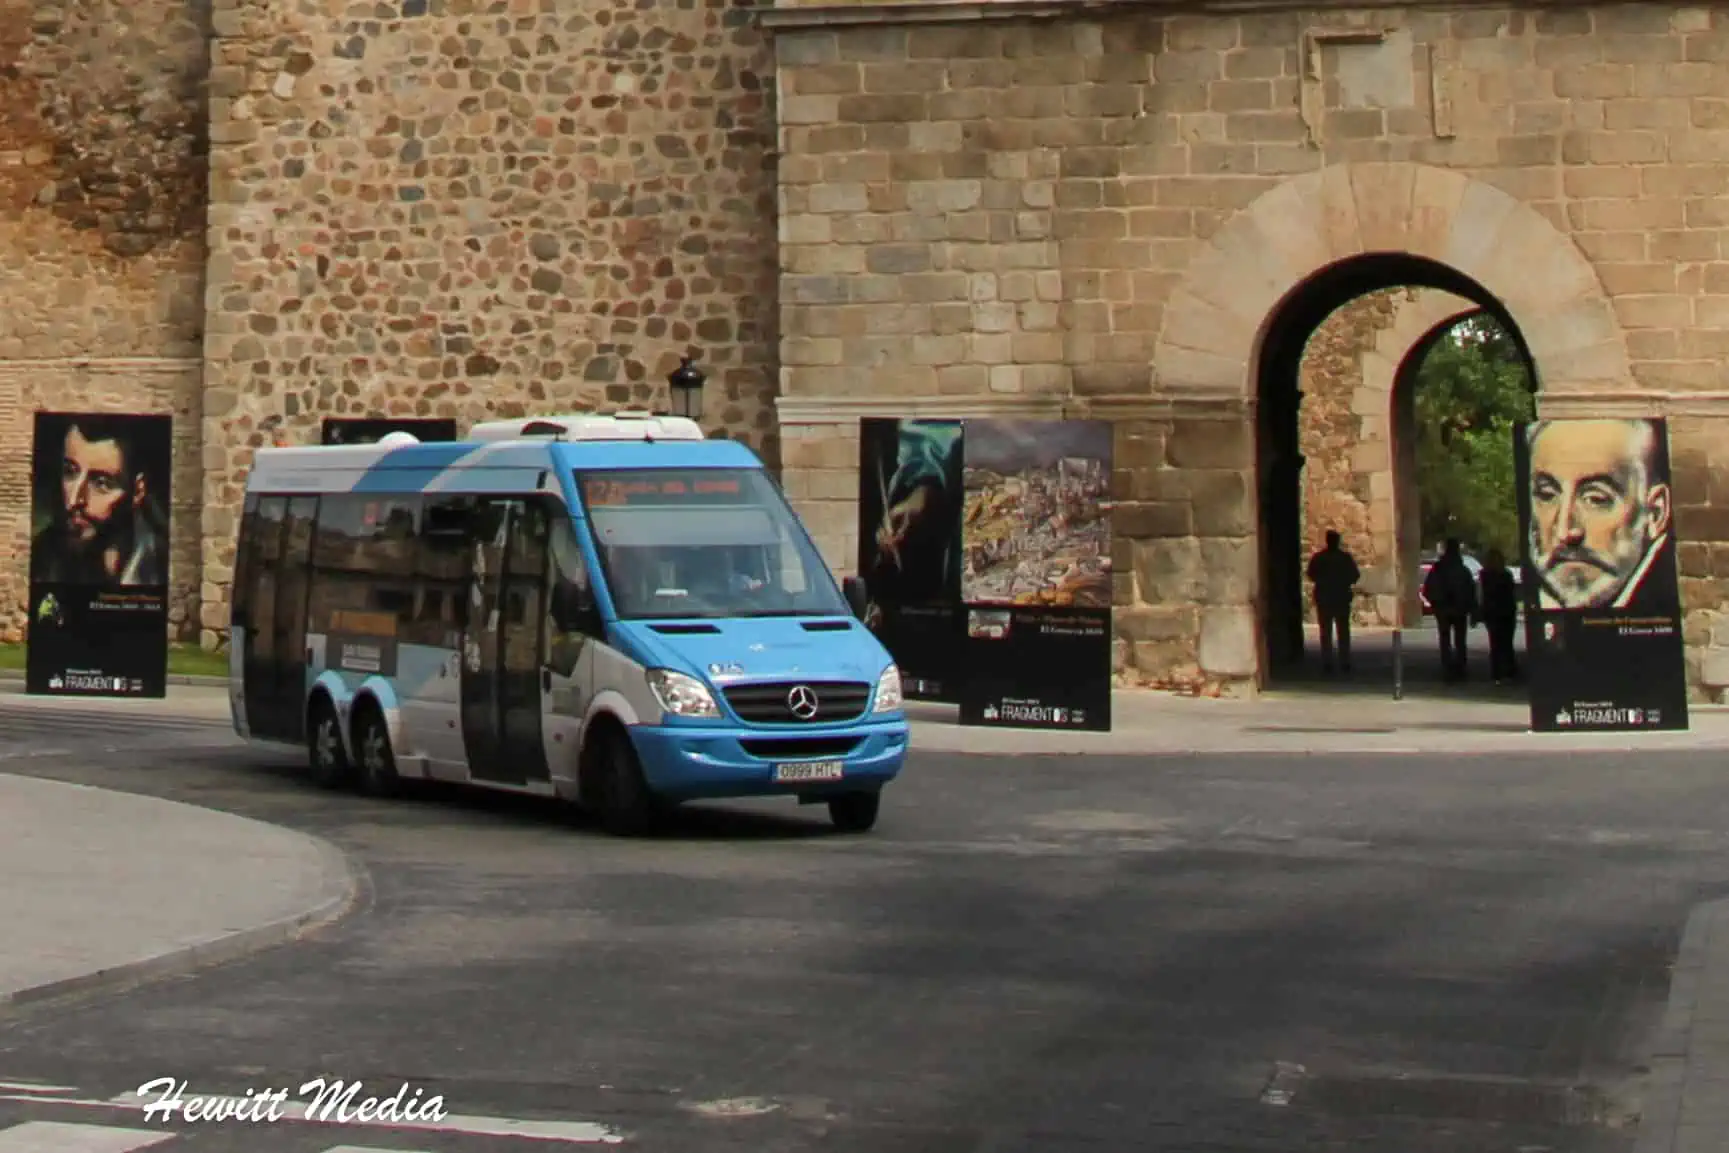 Toledo Spain Travel Guide